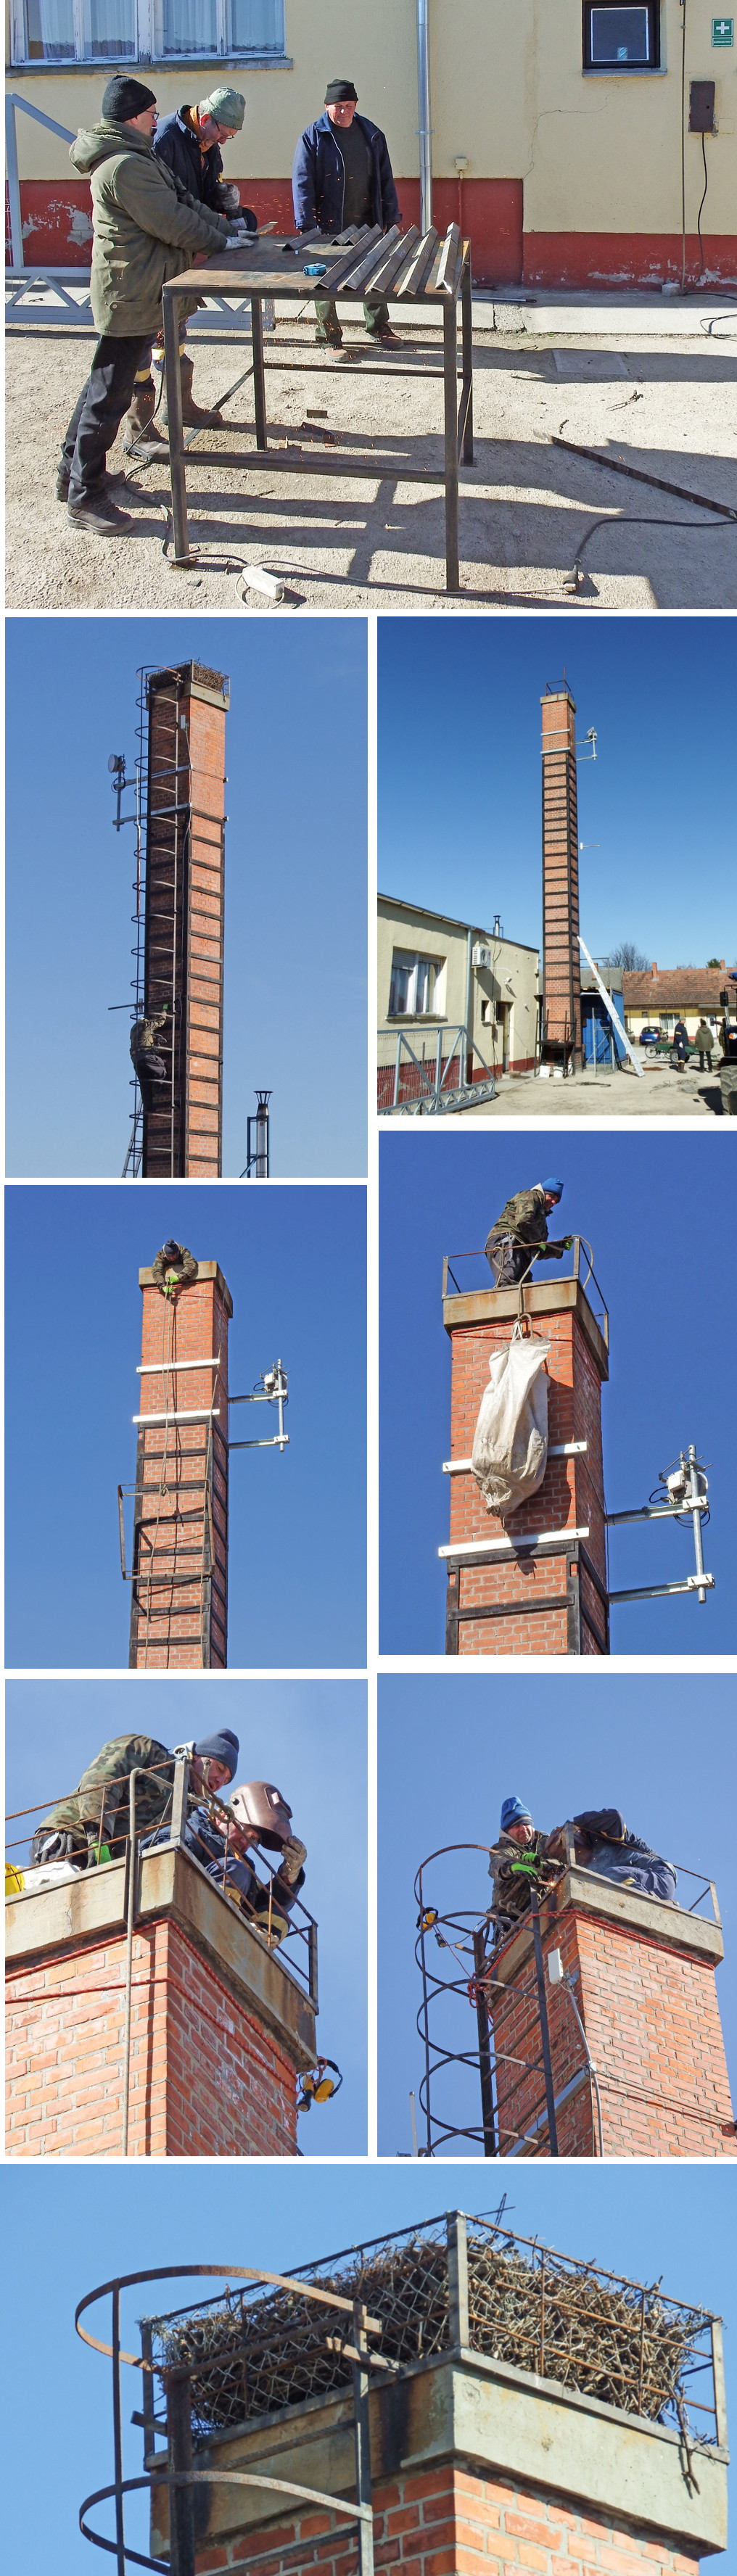 Ságvári gólyafészek felújítása 2019 februárjában